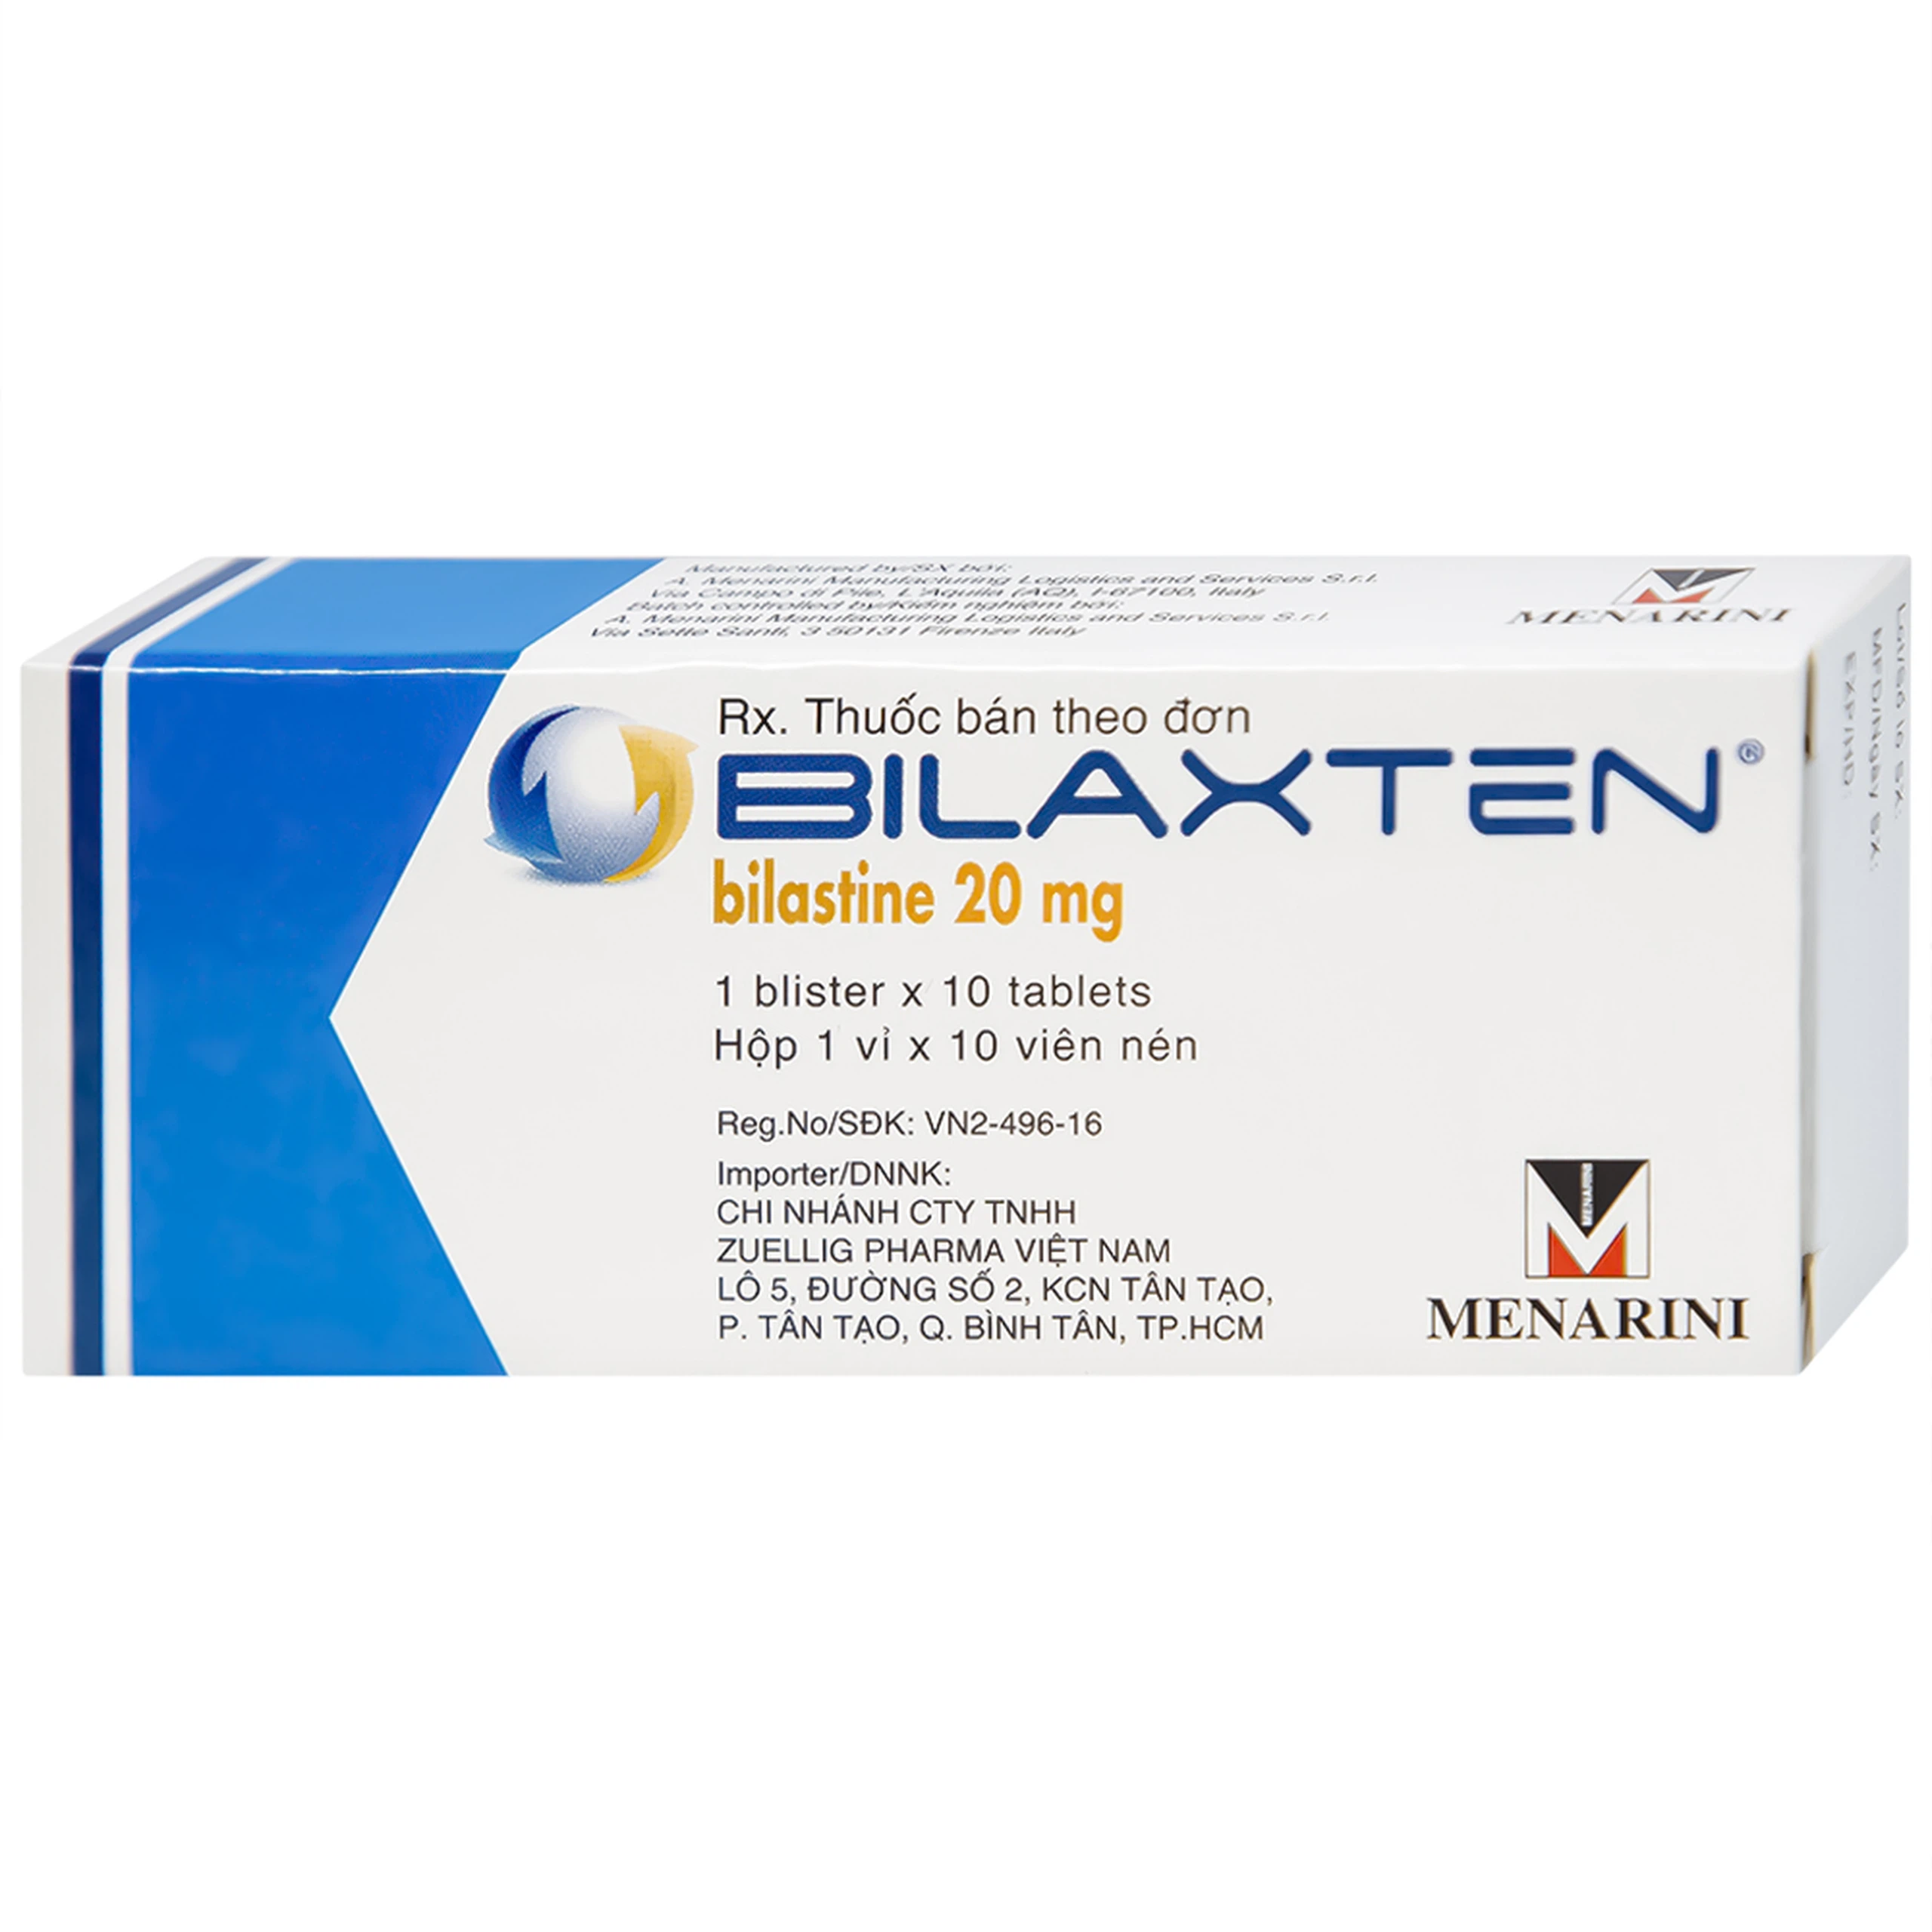 Thuốc Bilaxten 20mg Menarini điều trị viêm mũi dị ứng, mày đay (1 vỉ x 10 viên)